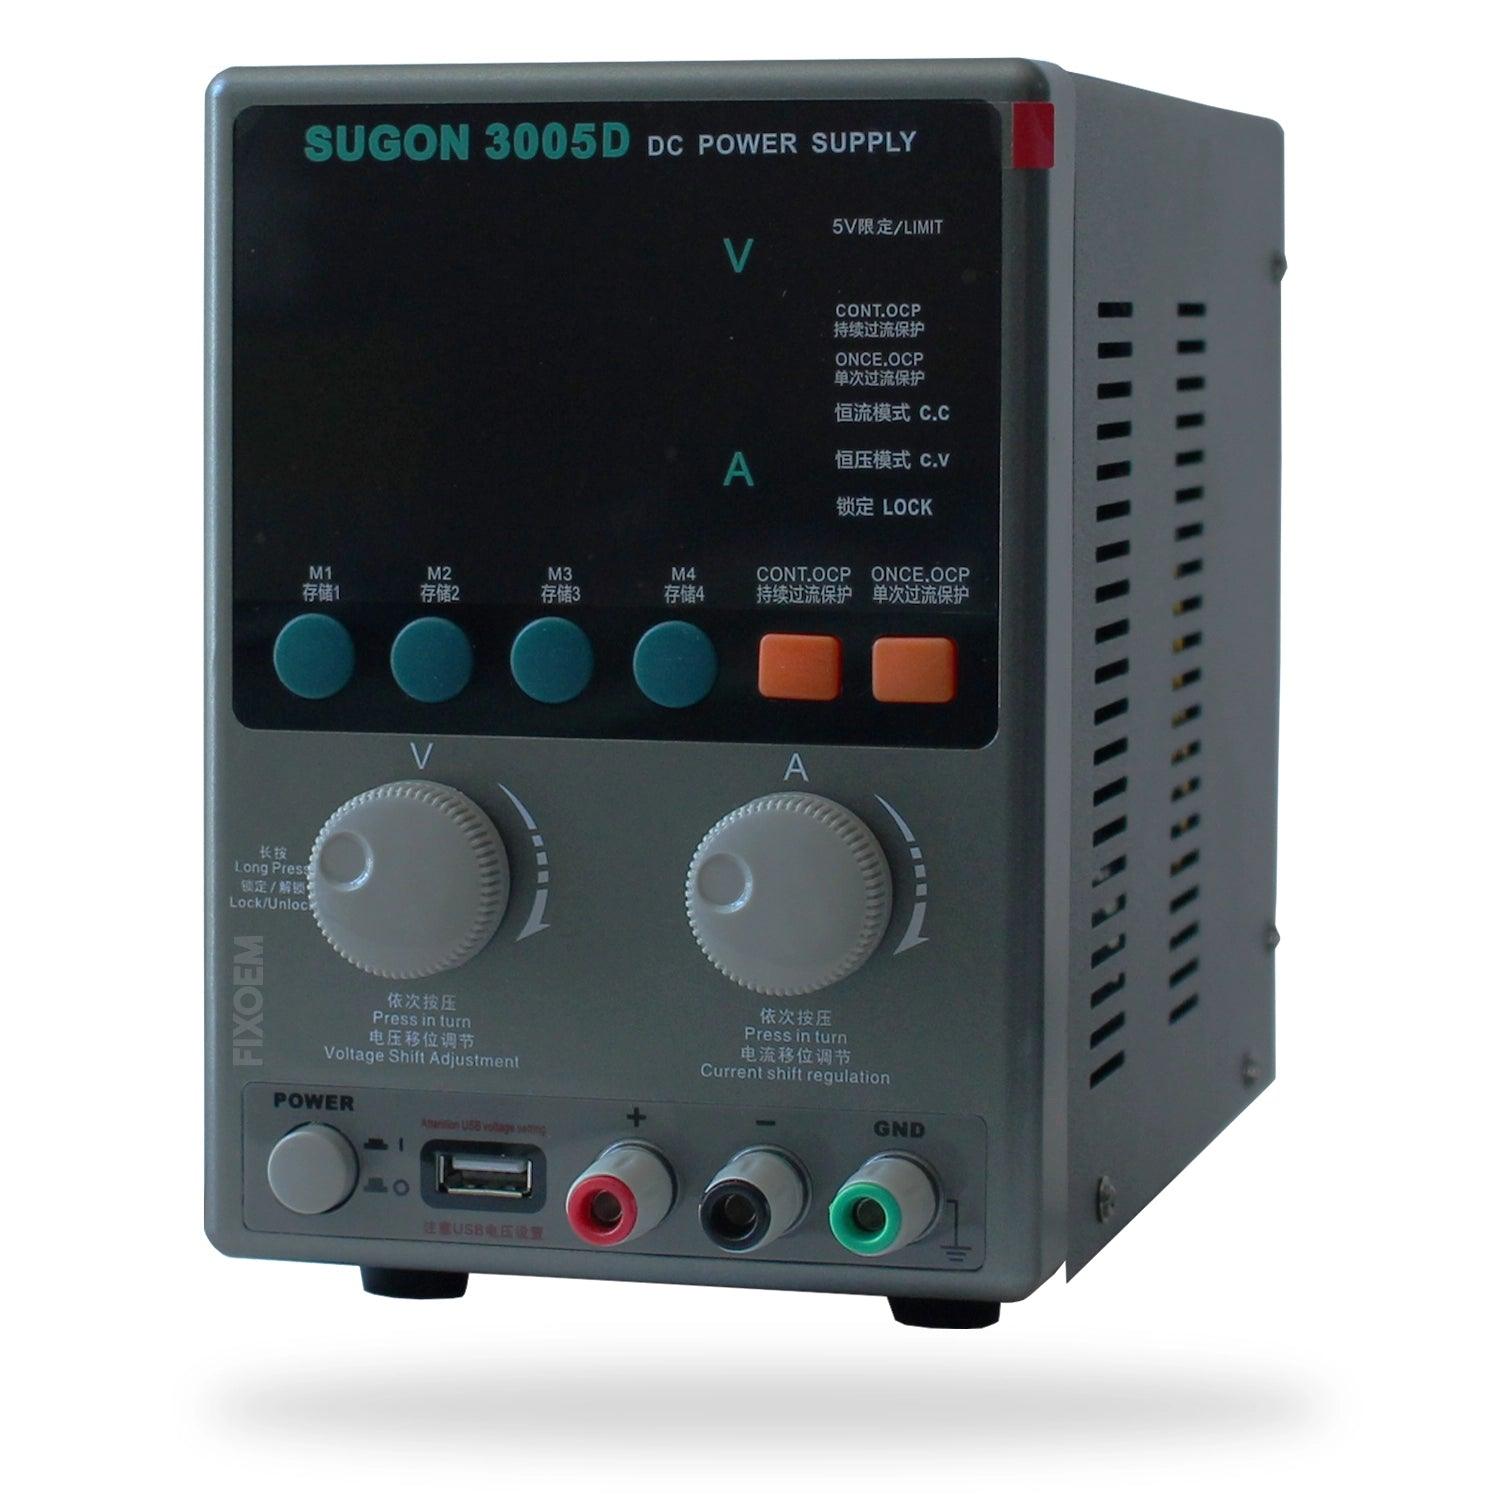 Fuente Regulable Poder Sugon 3005D 30V 5A a solo $ 2560.00 Refaccion y puestos celulares, refurbish y microelectronica.- FixOEM